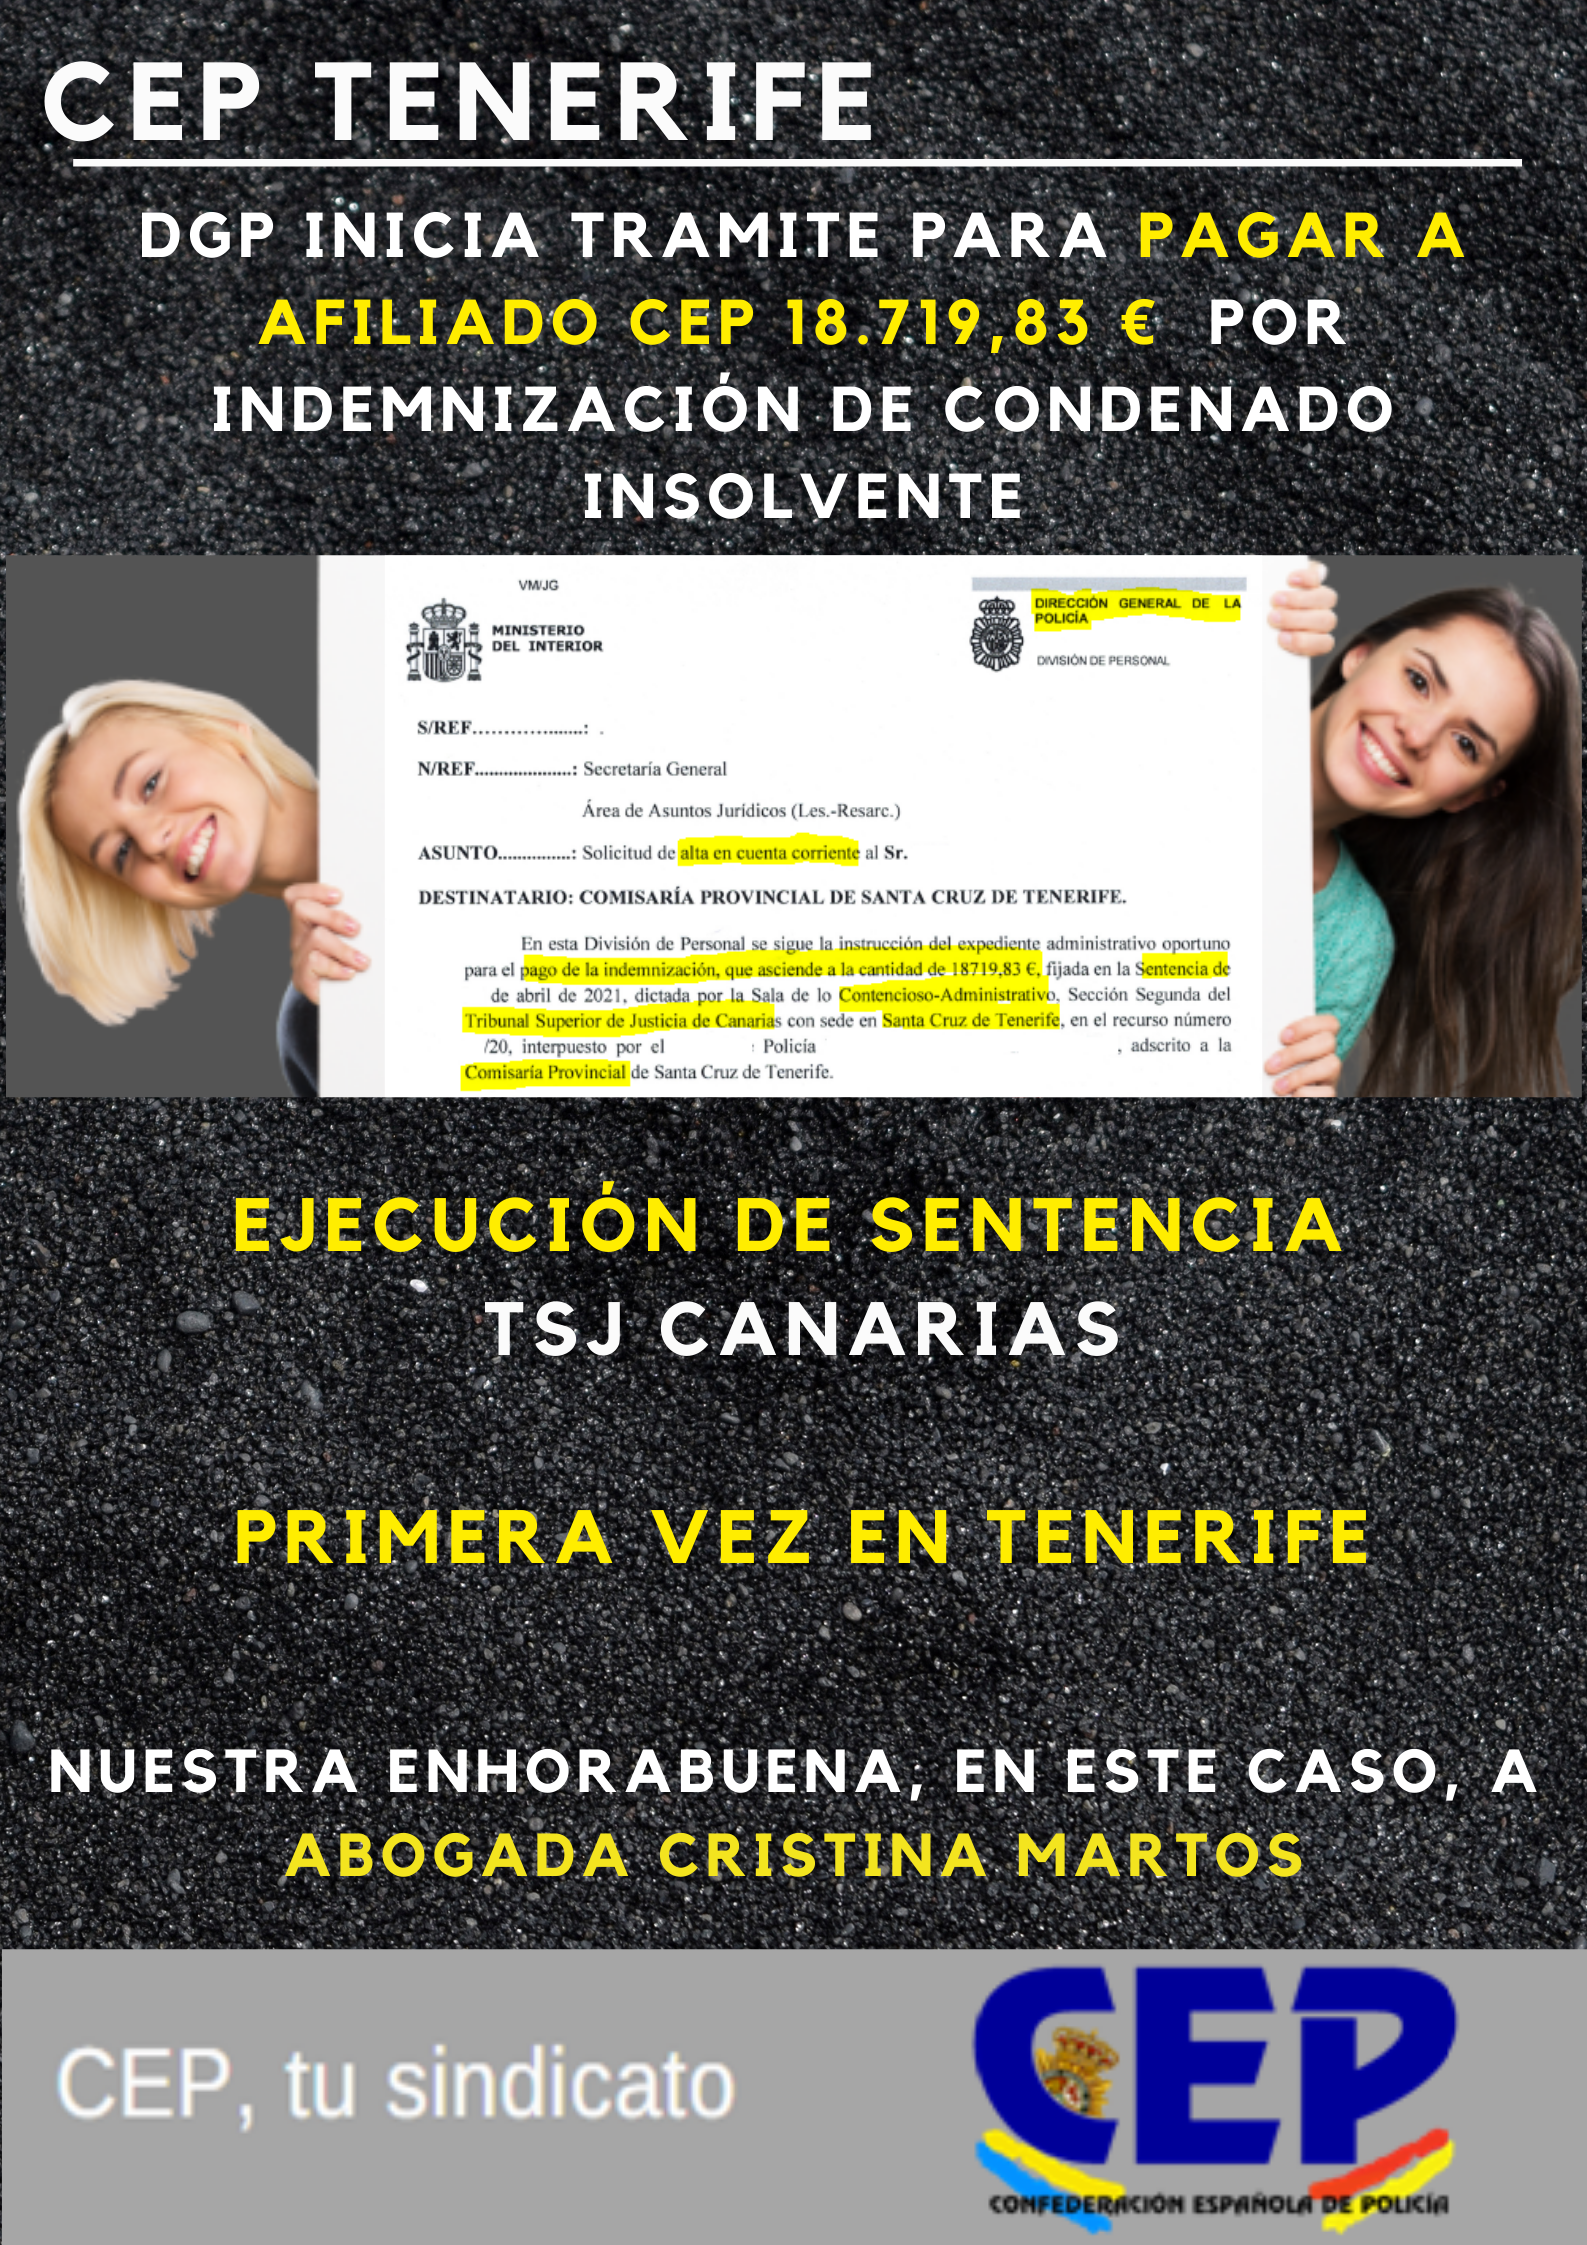 DGP inicia pago 18719€ en ejecución sentencia TSJ Canarias por indemnización de condenado insolvente